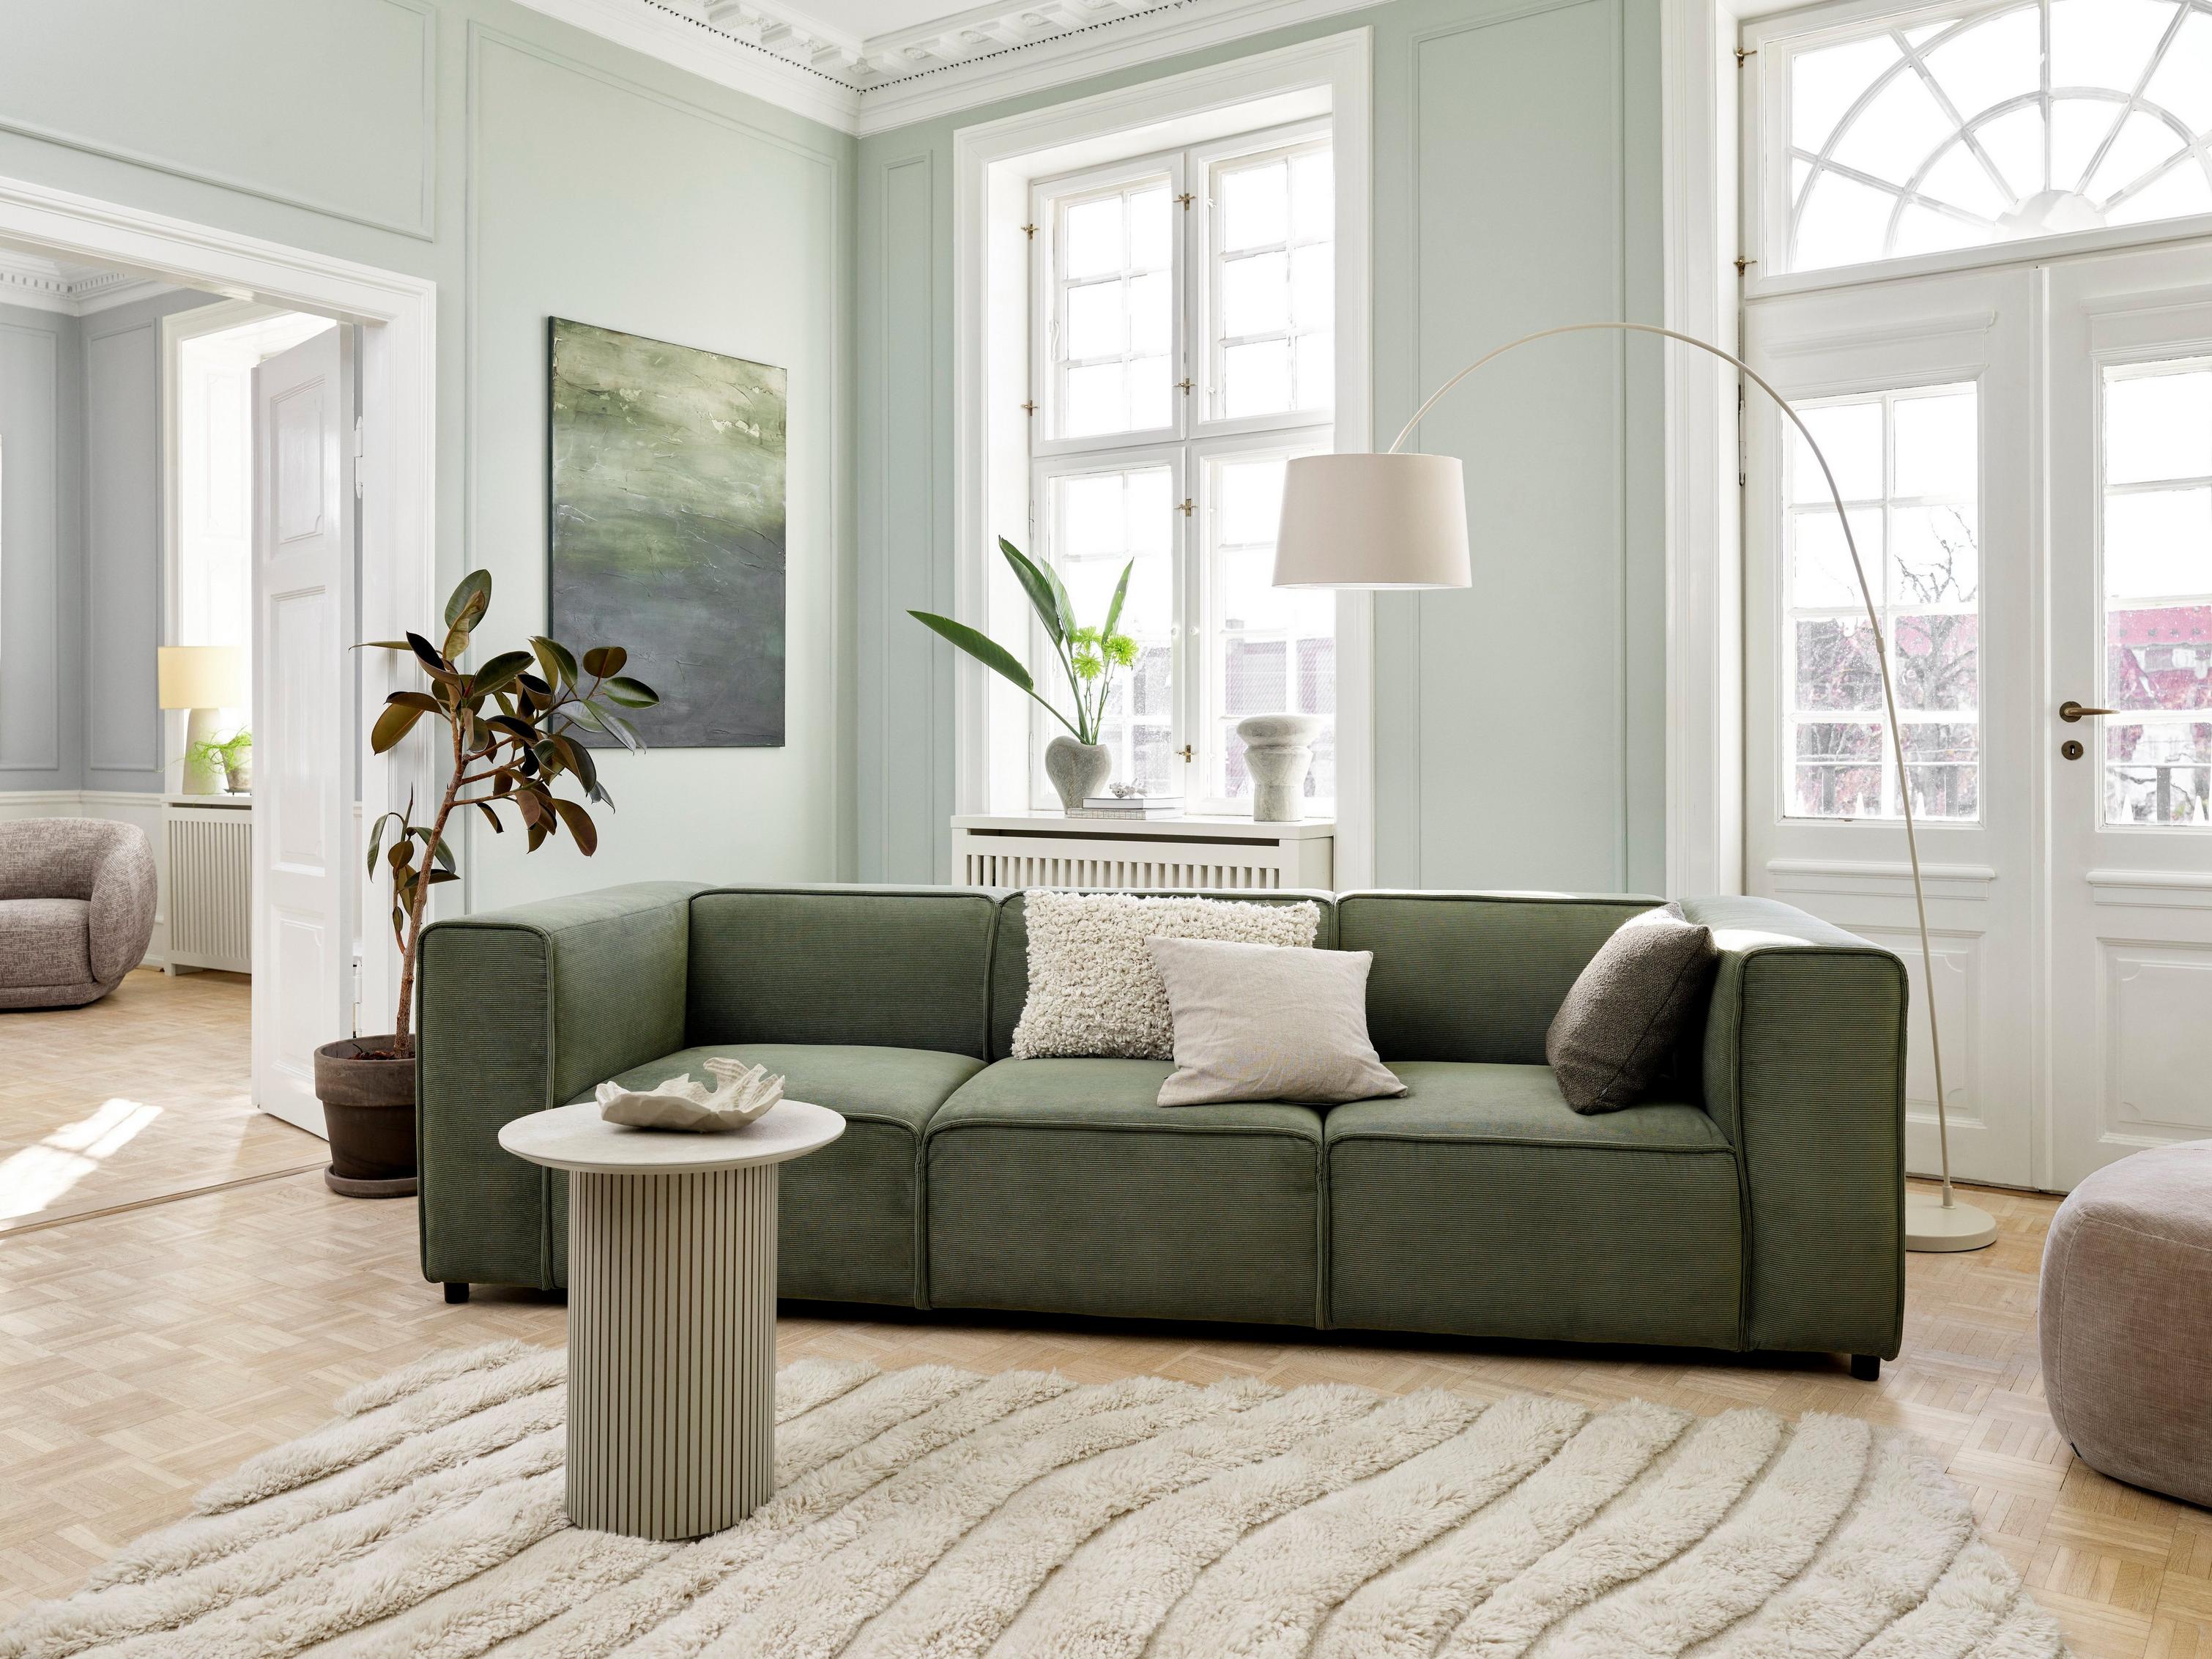 採用綠色 Skagen 布料 Carmo 沙發的日式風格客廳。